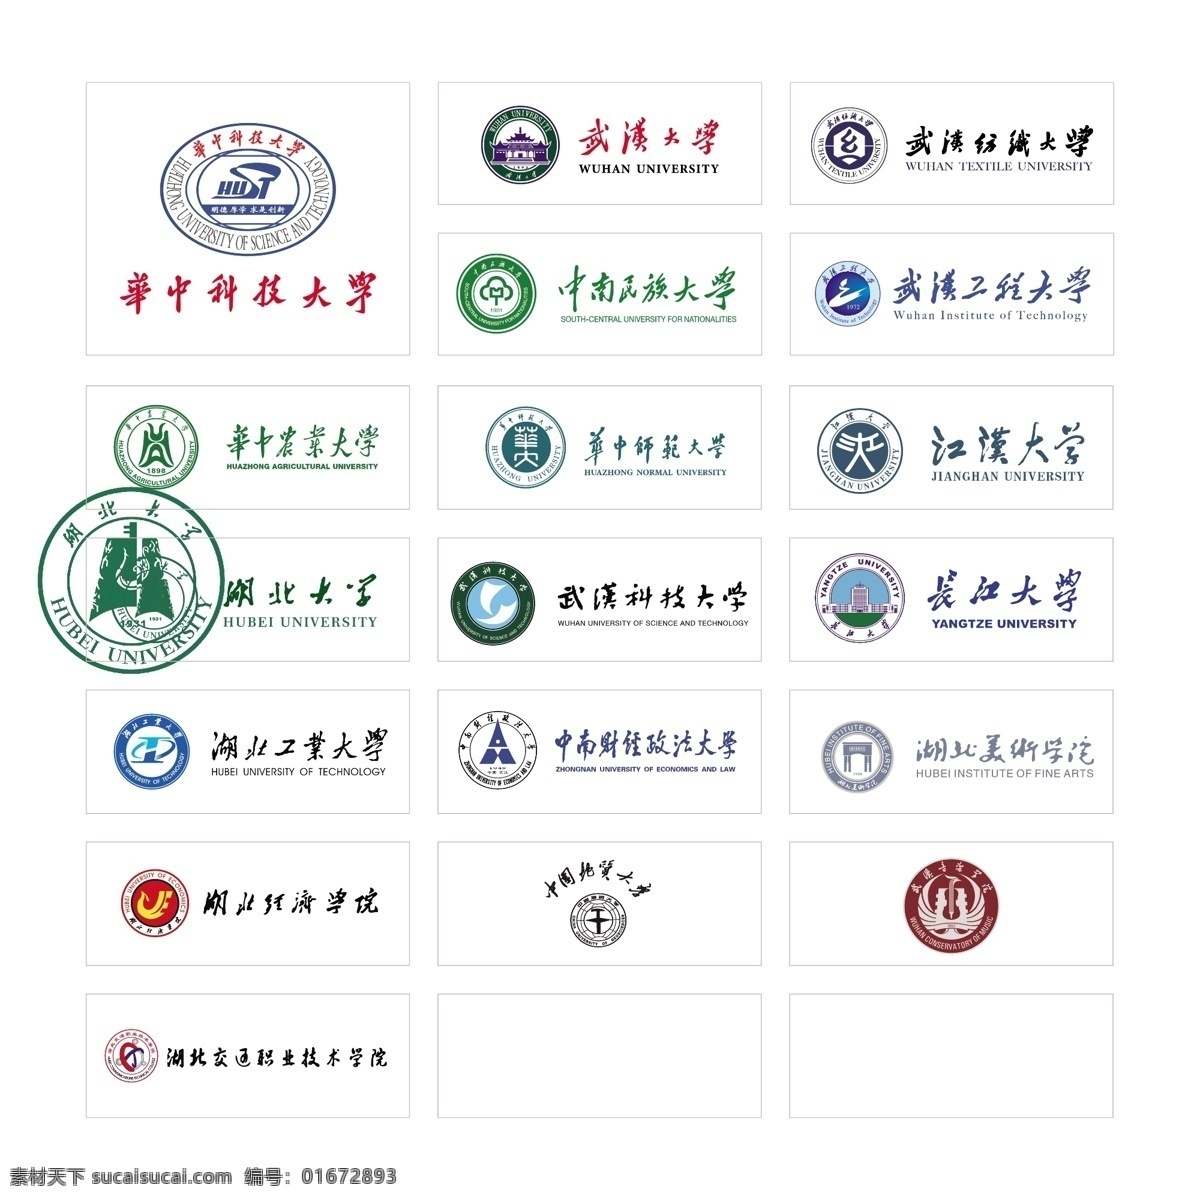 武汉 高校 logo 武汉大学标志 武汉科技大学 武汉高校 华中科技大学 武汉理工大学 标志图标 企业 标志